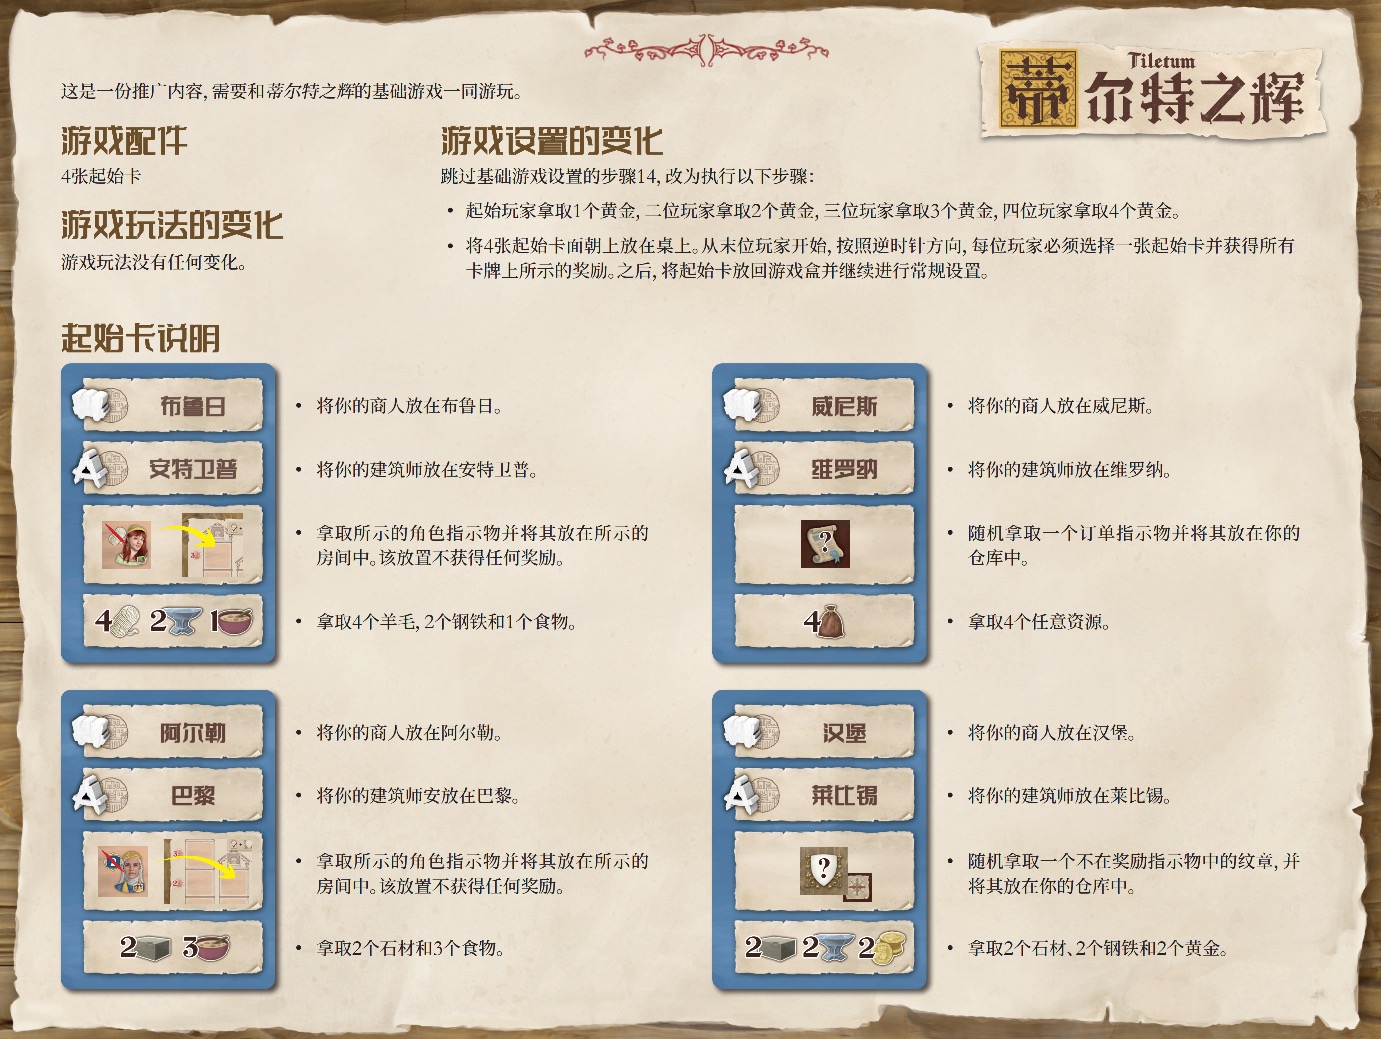 中文版游戏内的推广卡内容